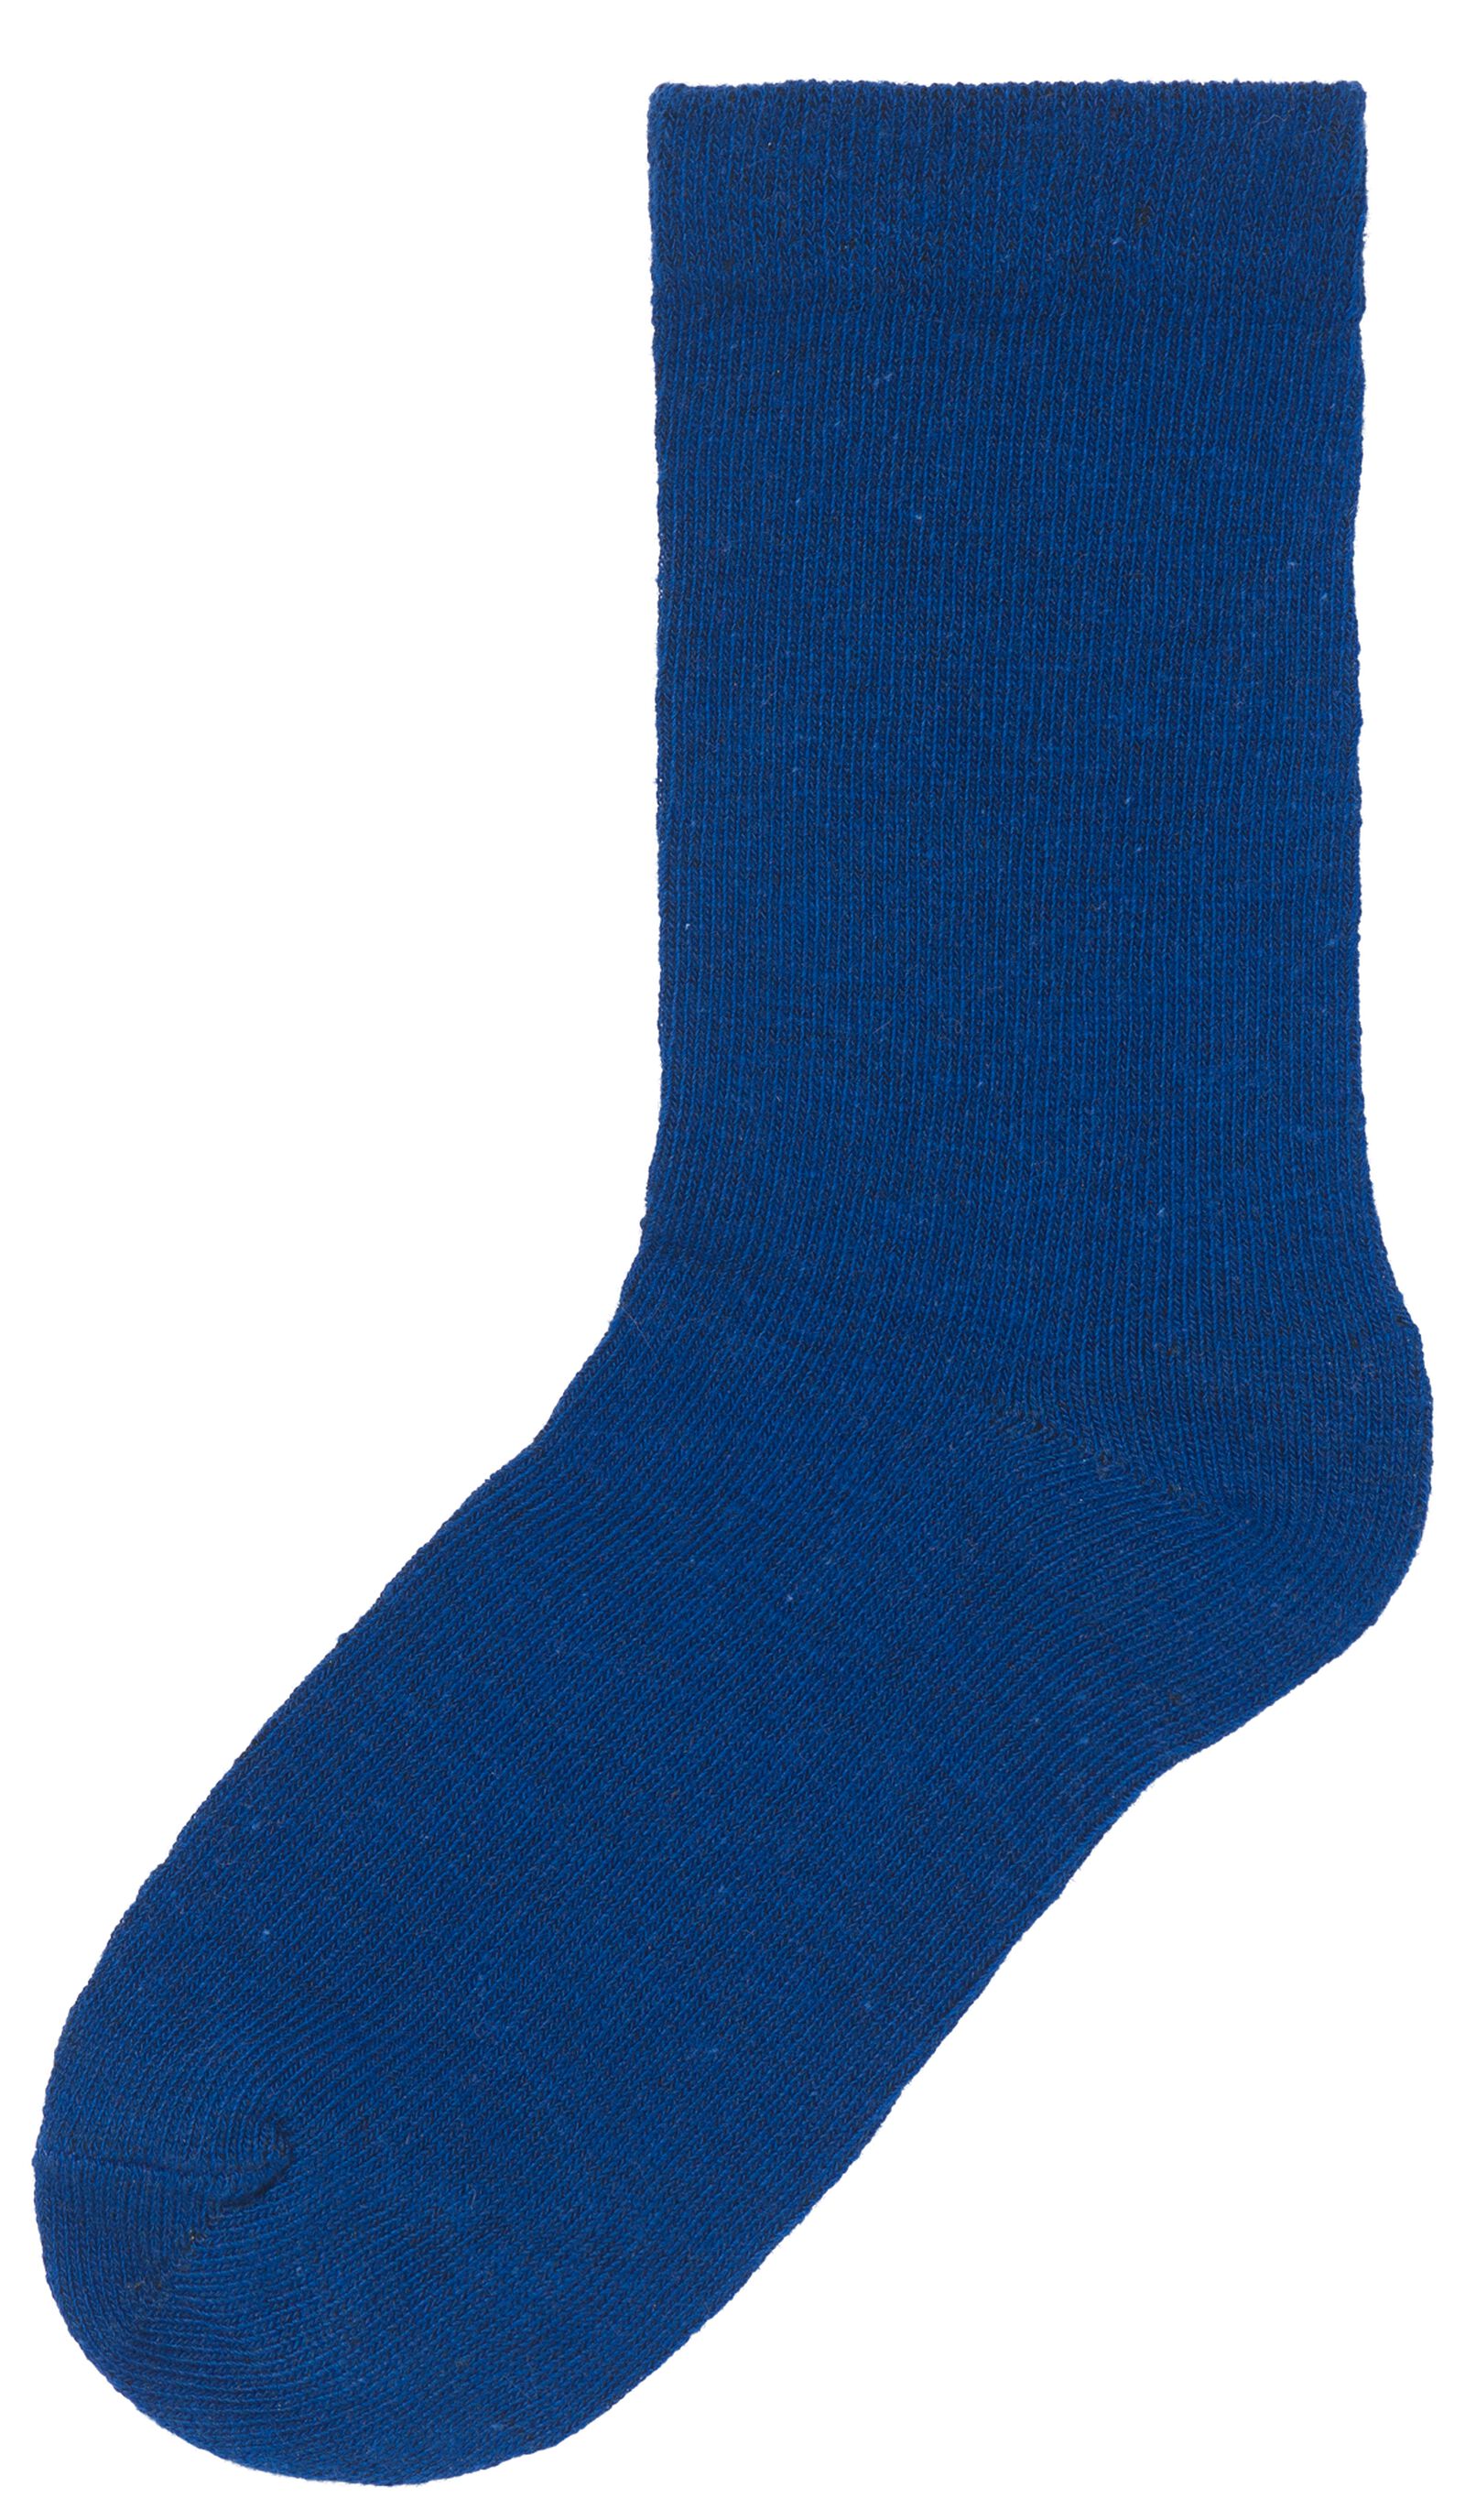 kinder sokken met katoen - 5 paar blauw 31/34 - 4360073 - HEMA